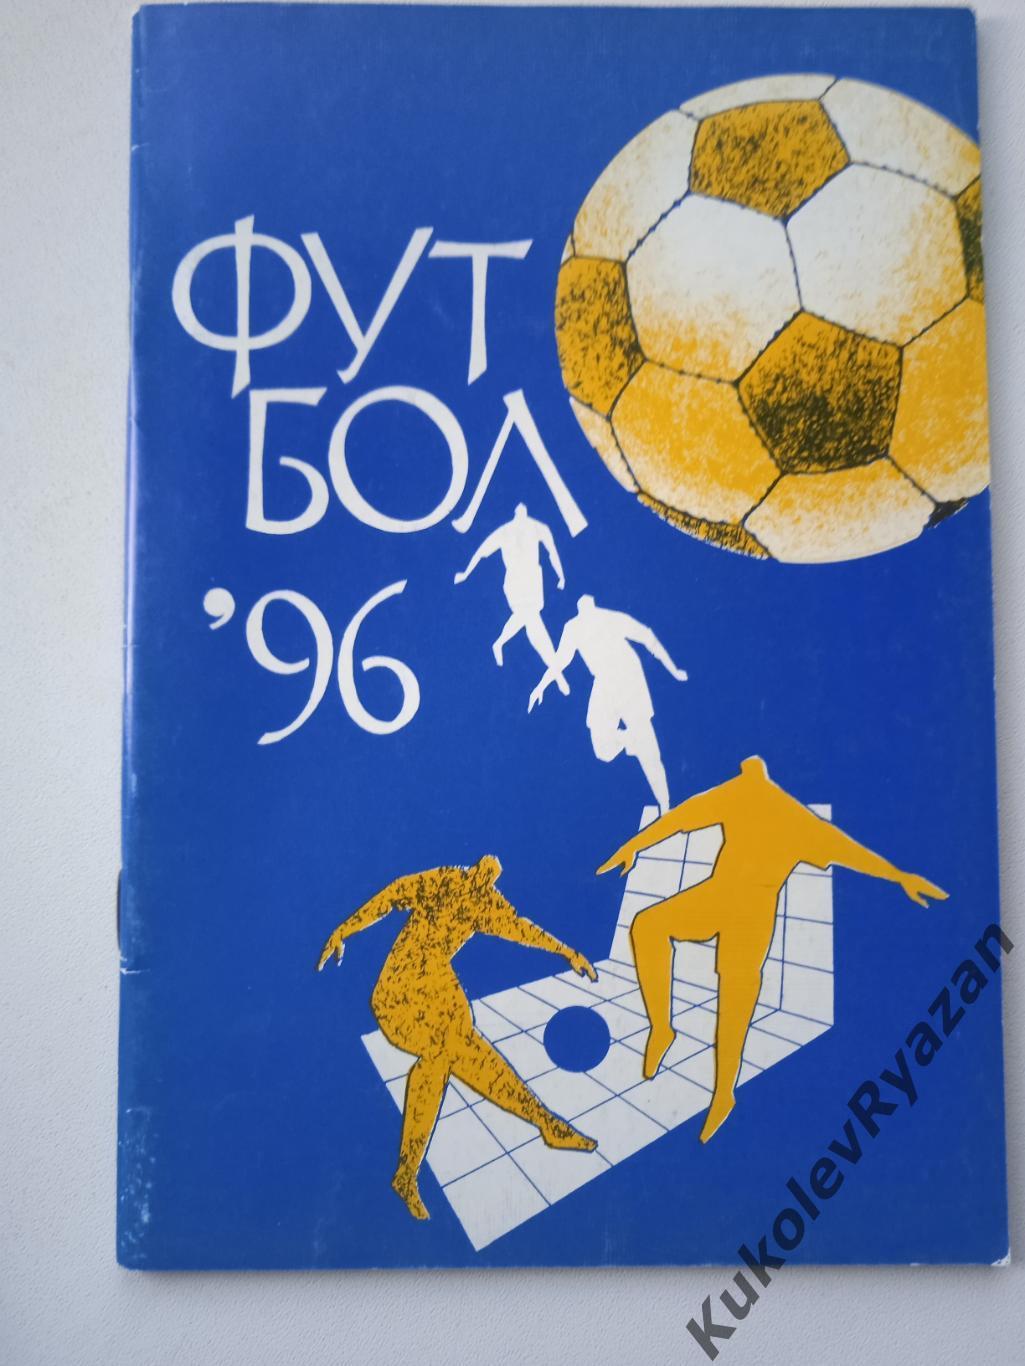 Футбол 1996 ИРК Арема 64 страницы. Синяя